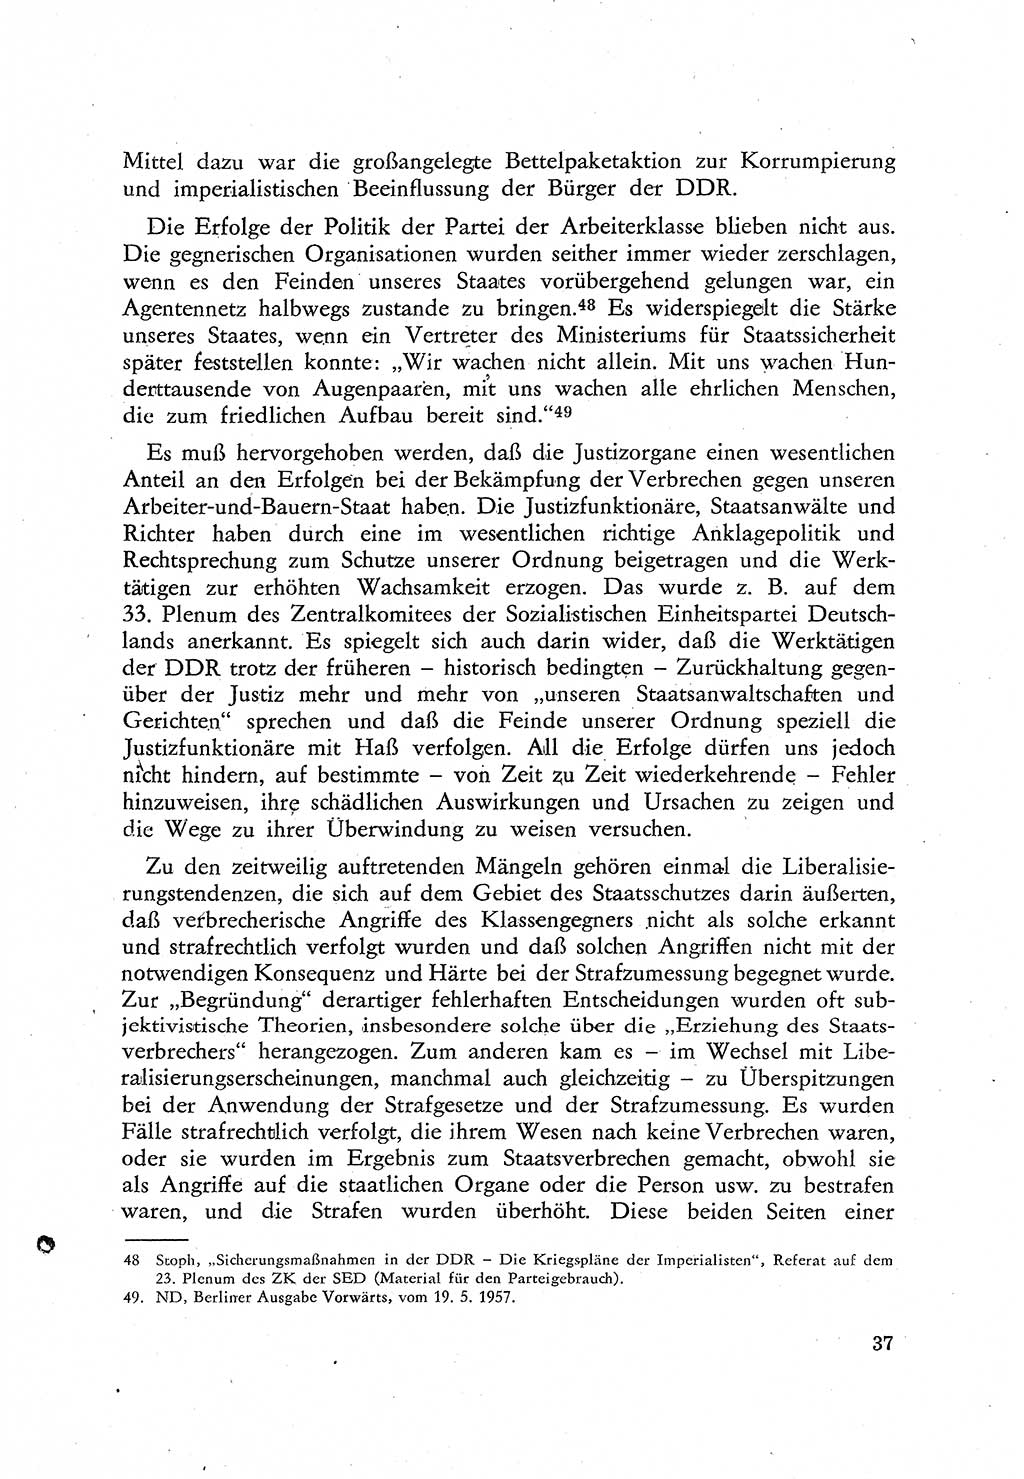 Beiträge zum Strafrecht [Deutsche Demokratische Republik (DDR)], Staatsverbrechen 1959, Seite 37 (Beitr. Strafr. DDR St.-Verbr. 1959, S. 37)